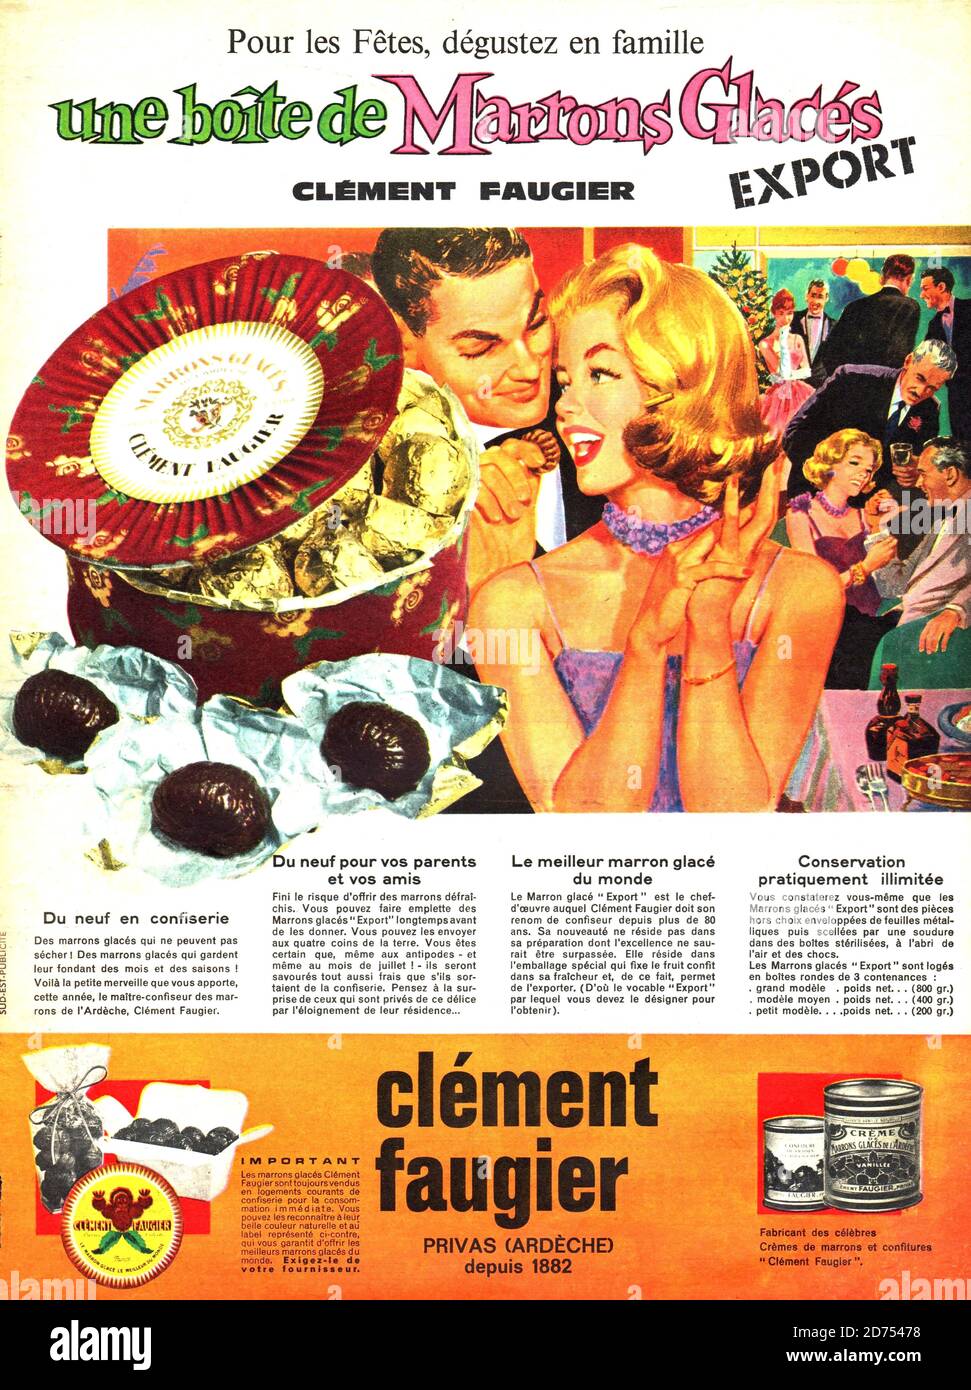 Publicite de presse creme de marron Clement Faugier 1960 Stock Photo